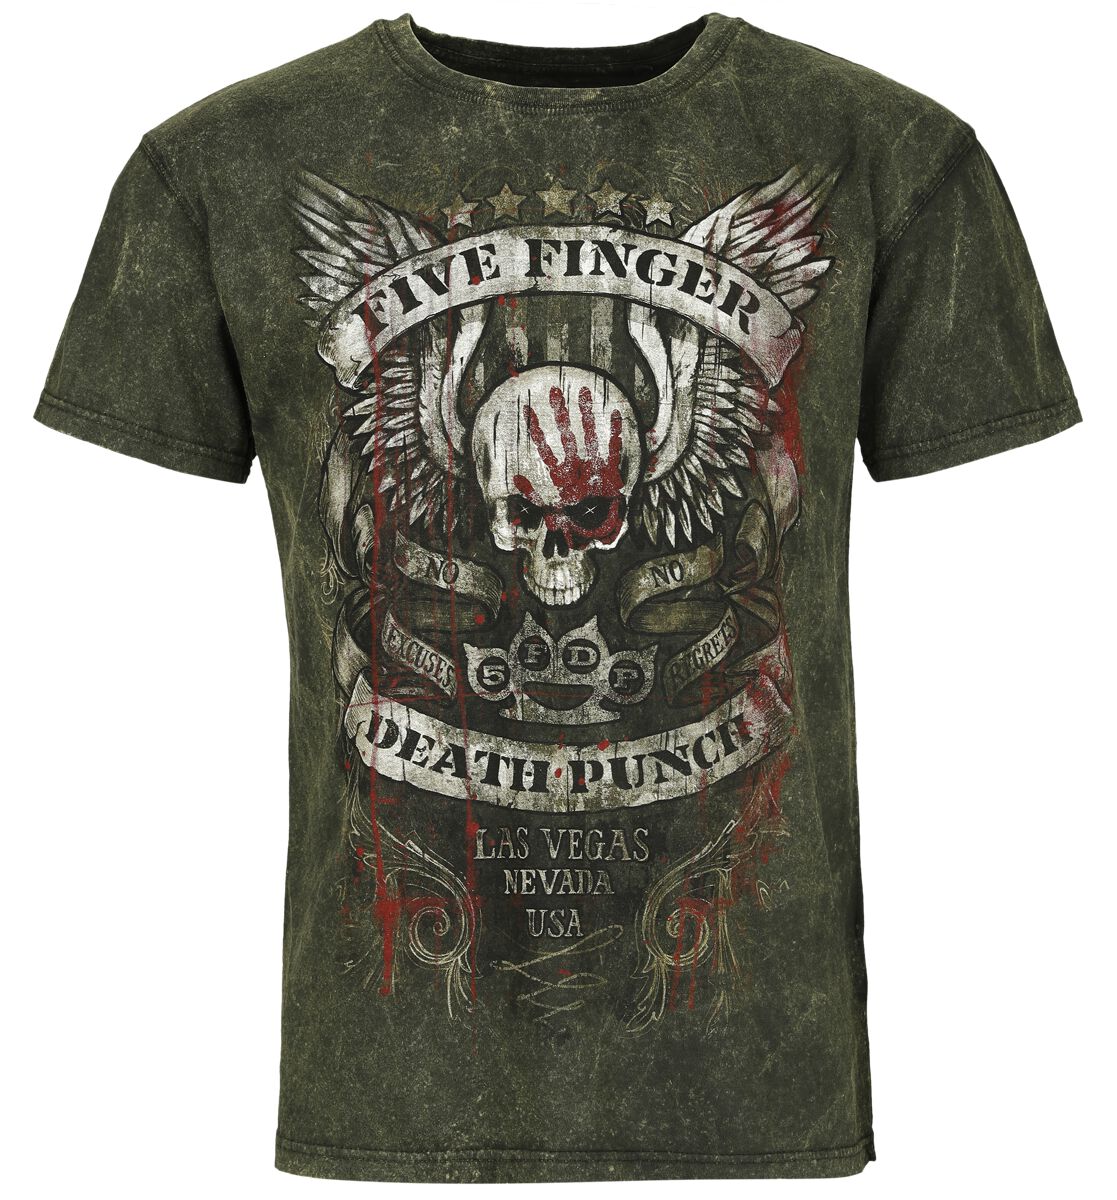 Five Finger Death Punch T-Shirt - No Regrets - S bis 4XL - für Männer - Größe 4XL - grau/braun  - Lizenziertes Merchandise!